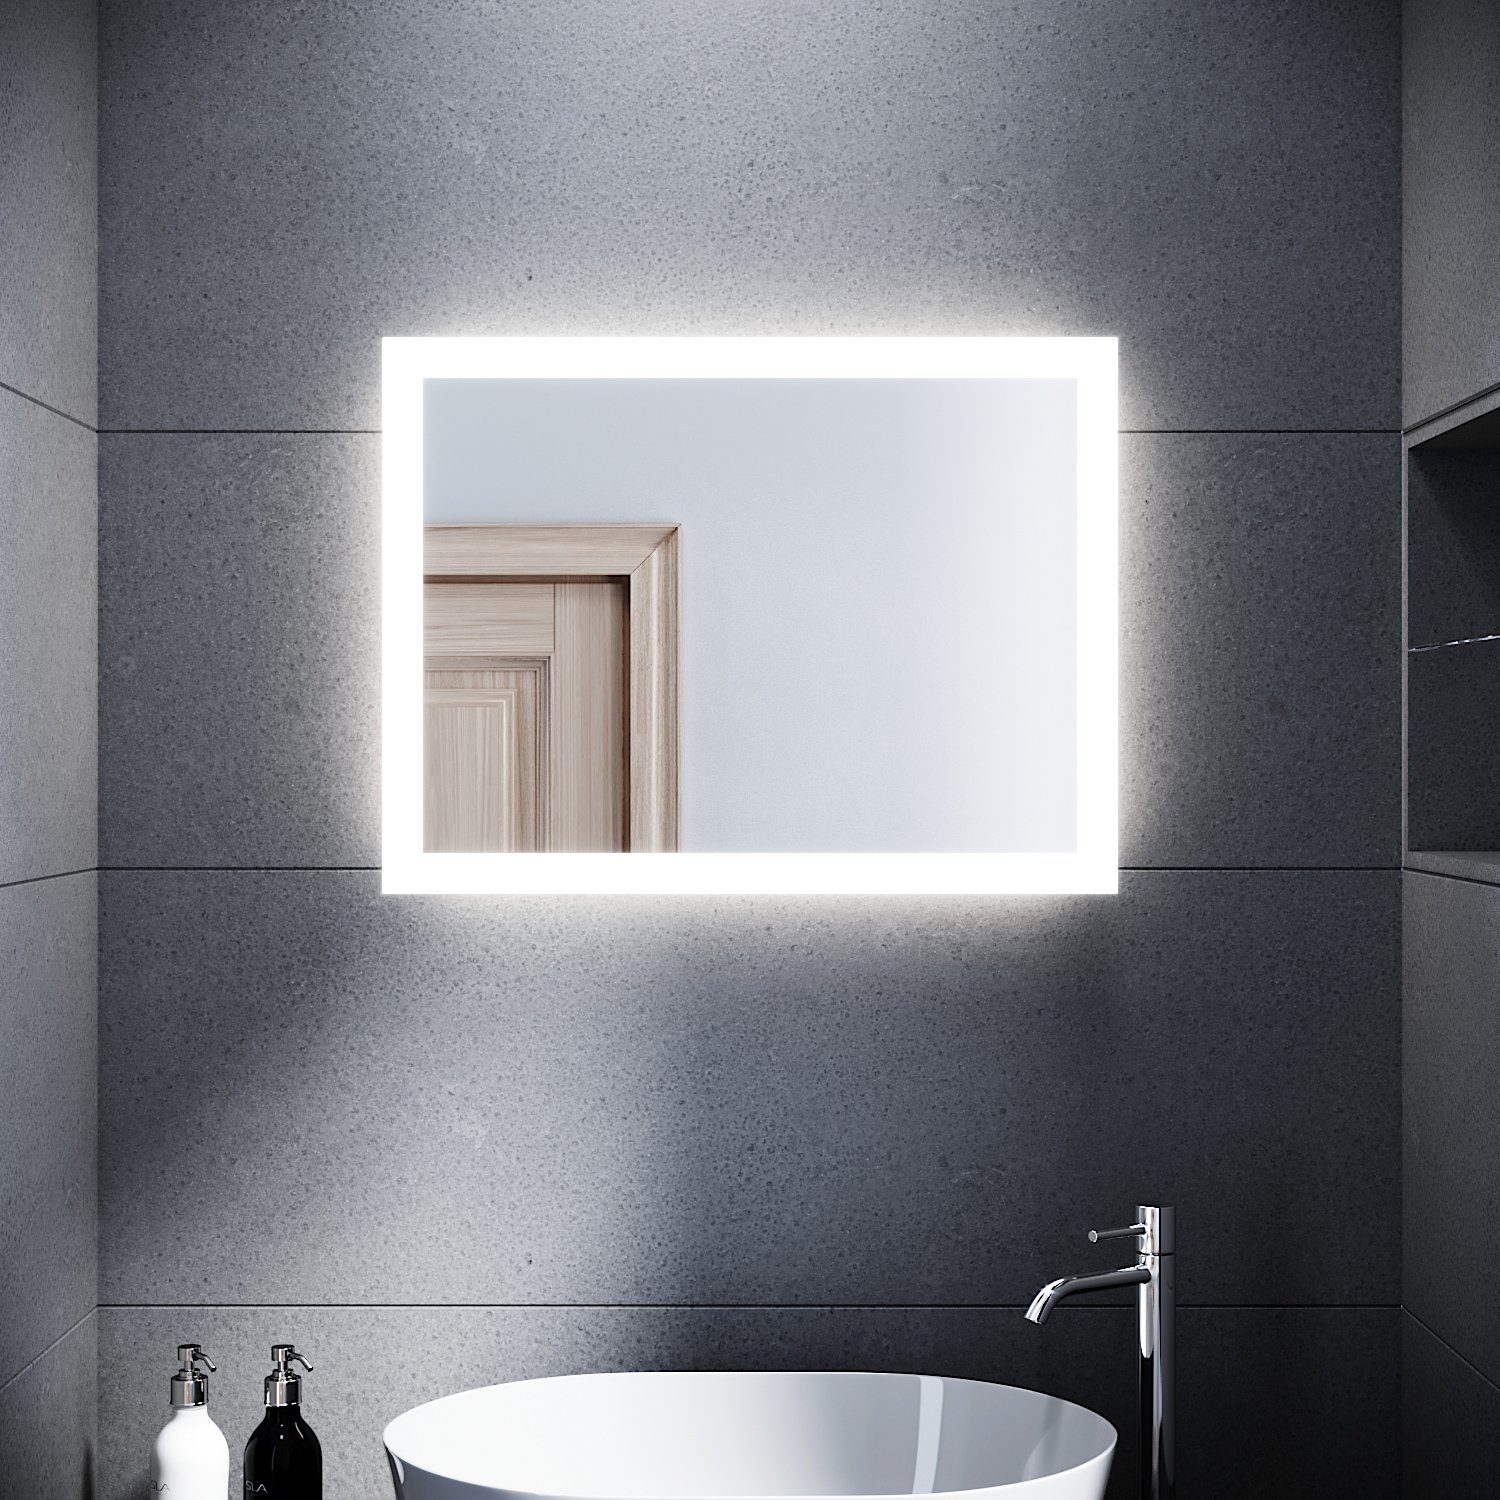 SONNI Badspiegel »Badspiegel mit Beleuchtung 60×50 cm Wandschalter  Badezimmerspiegel LED Badspiegel Wandspiegel Badspiegel Lichtspiegel IP44«  online kaufen | OTTO